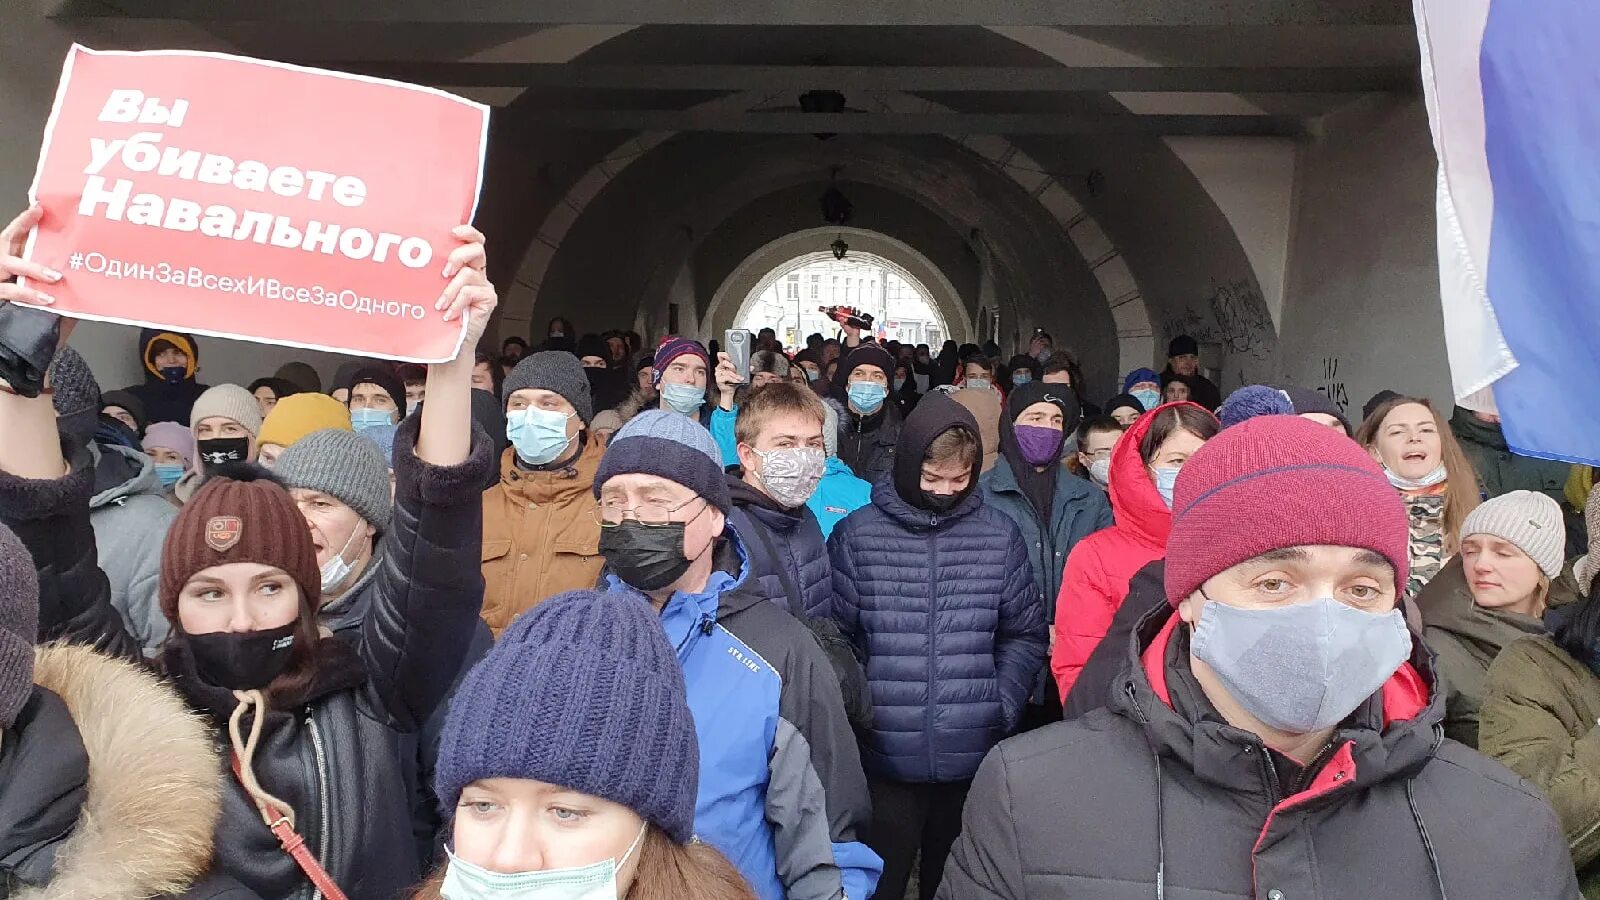 Митинги Навального 2021. Митинги 23 января 2021 года. Митинг Ярославль. Митинг свободу Навальному. Митинг сколько людей вышло